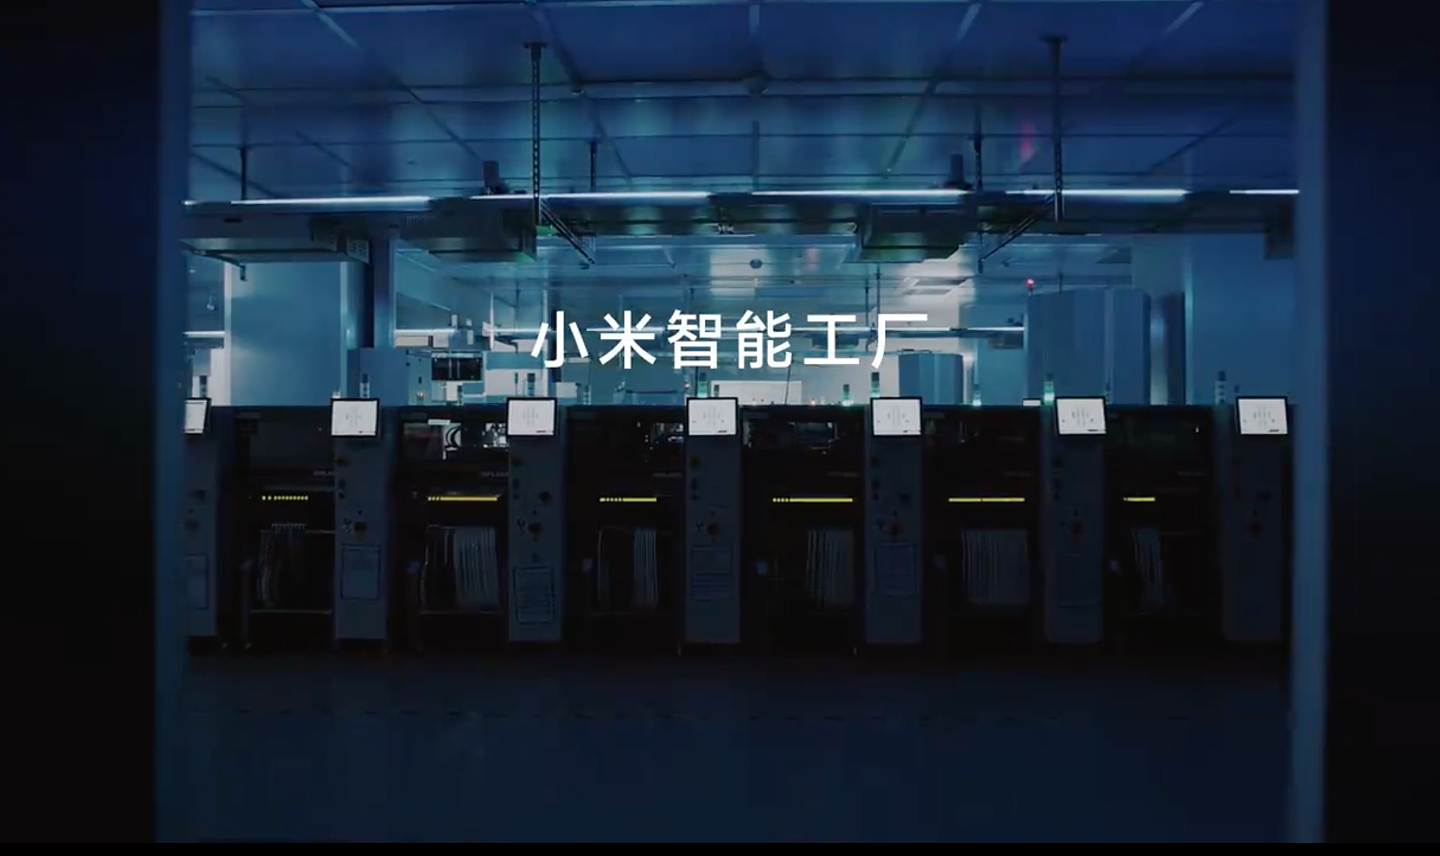 小米北京昌平智能工厂年底前全部投产，预计年产能 1000 万台智能手机 - 2